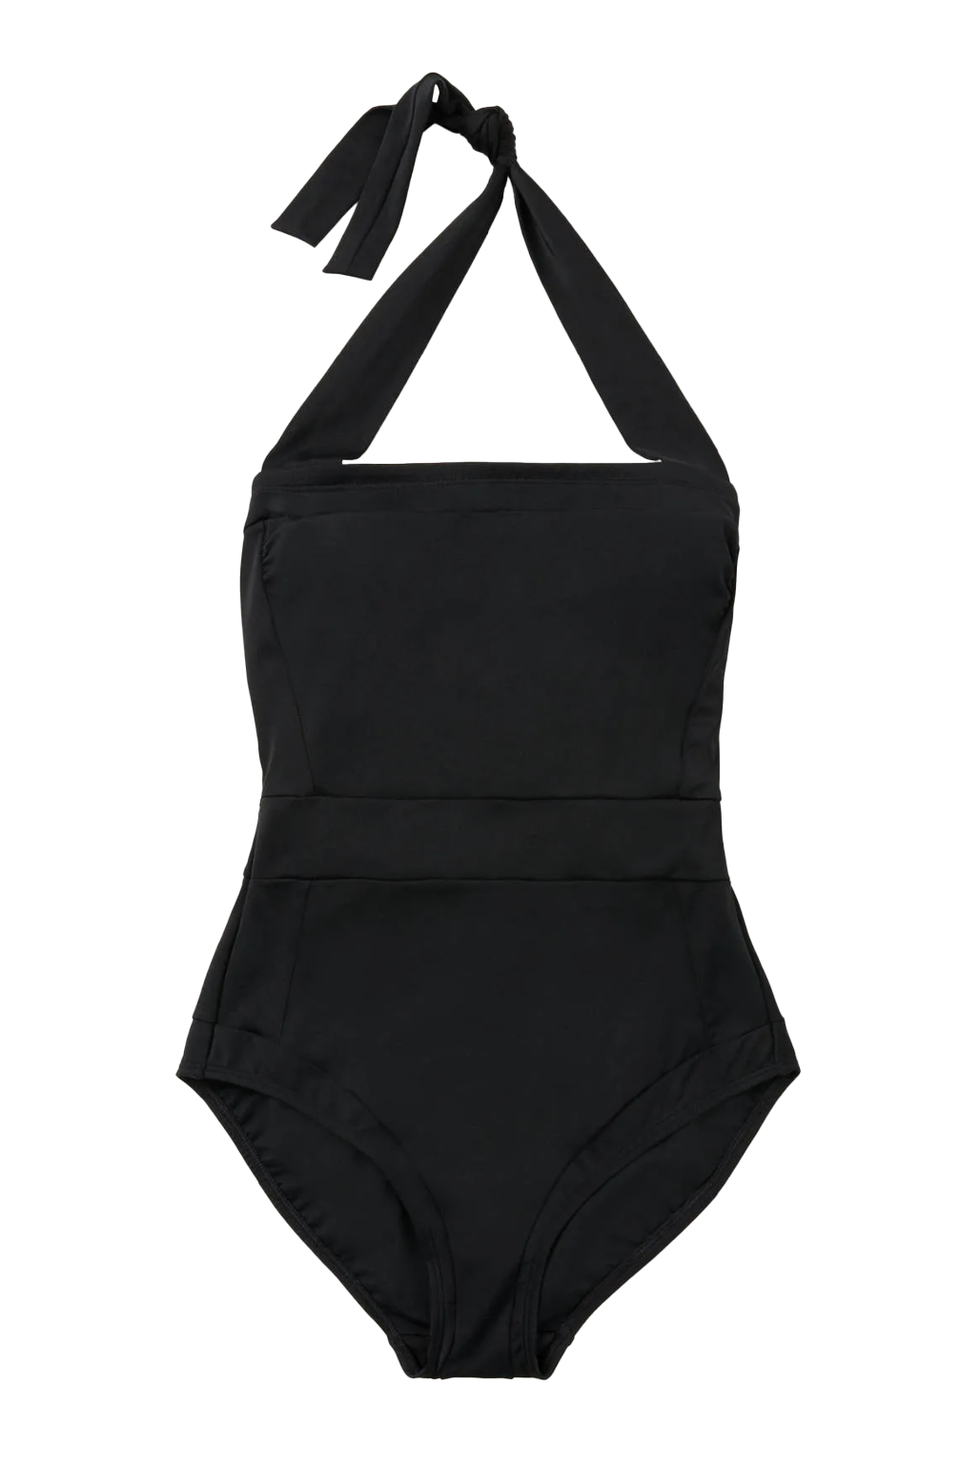 Boden Santorini Black Swimsuit 